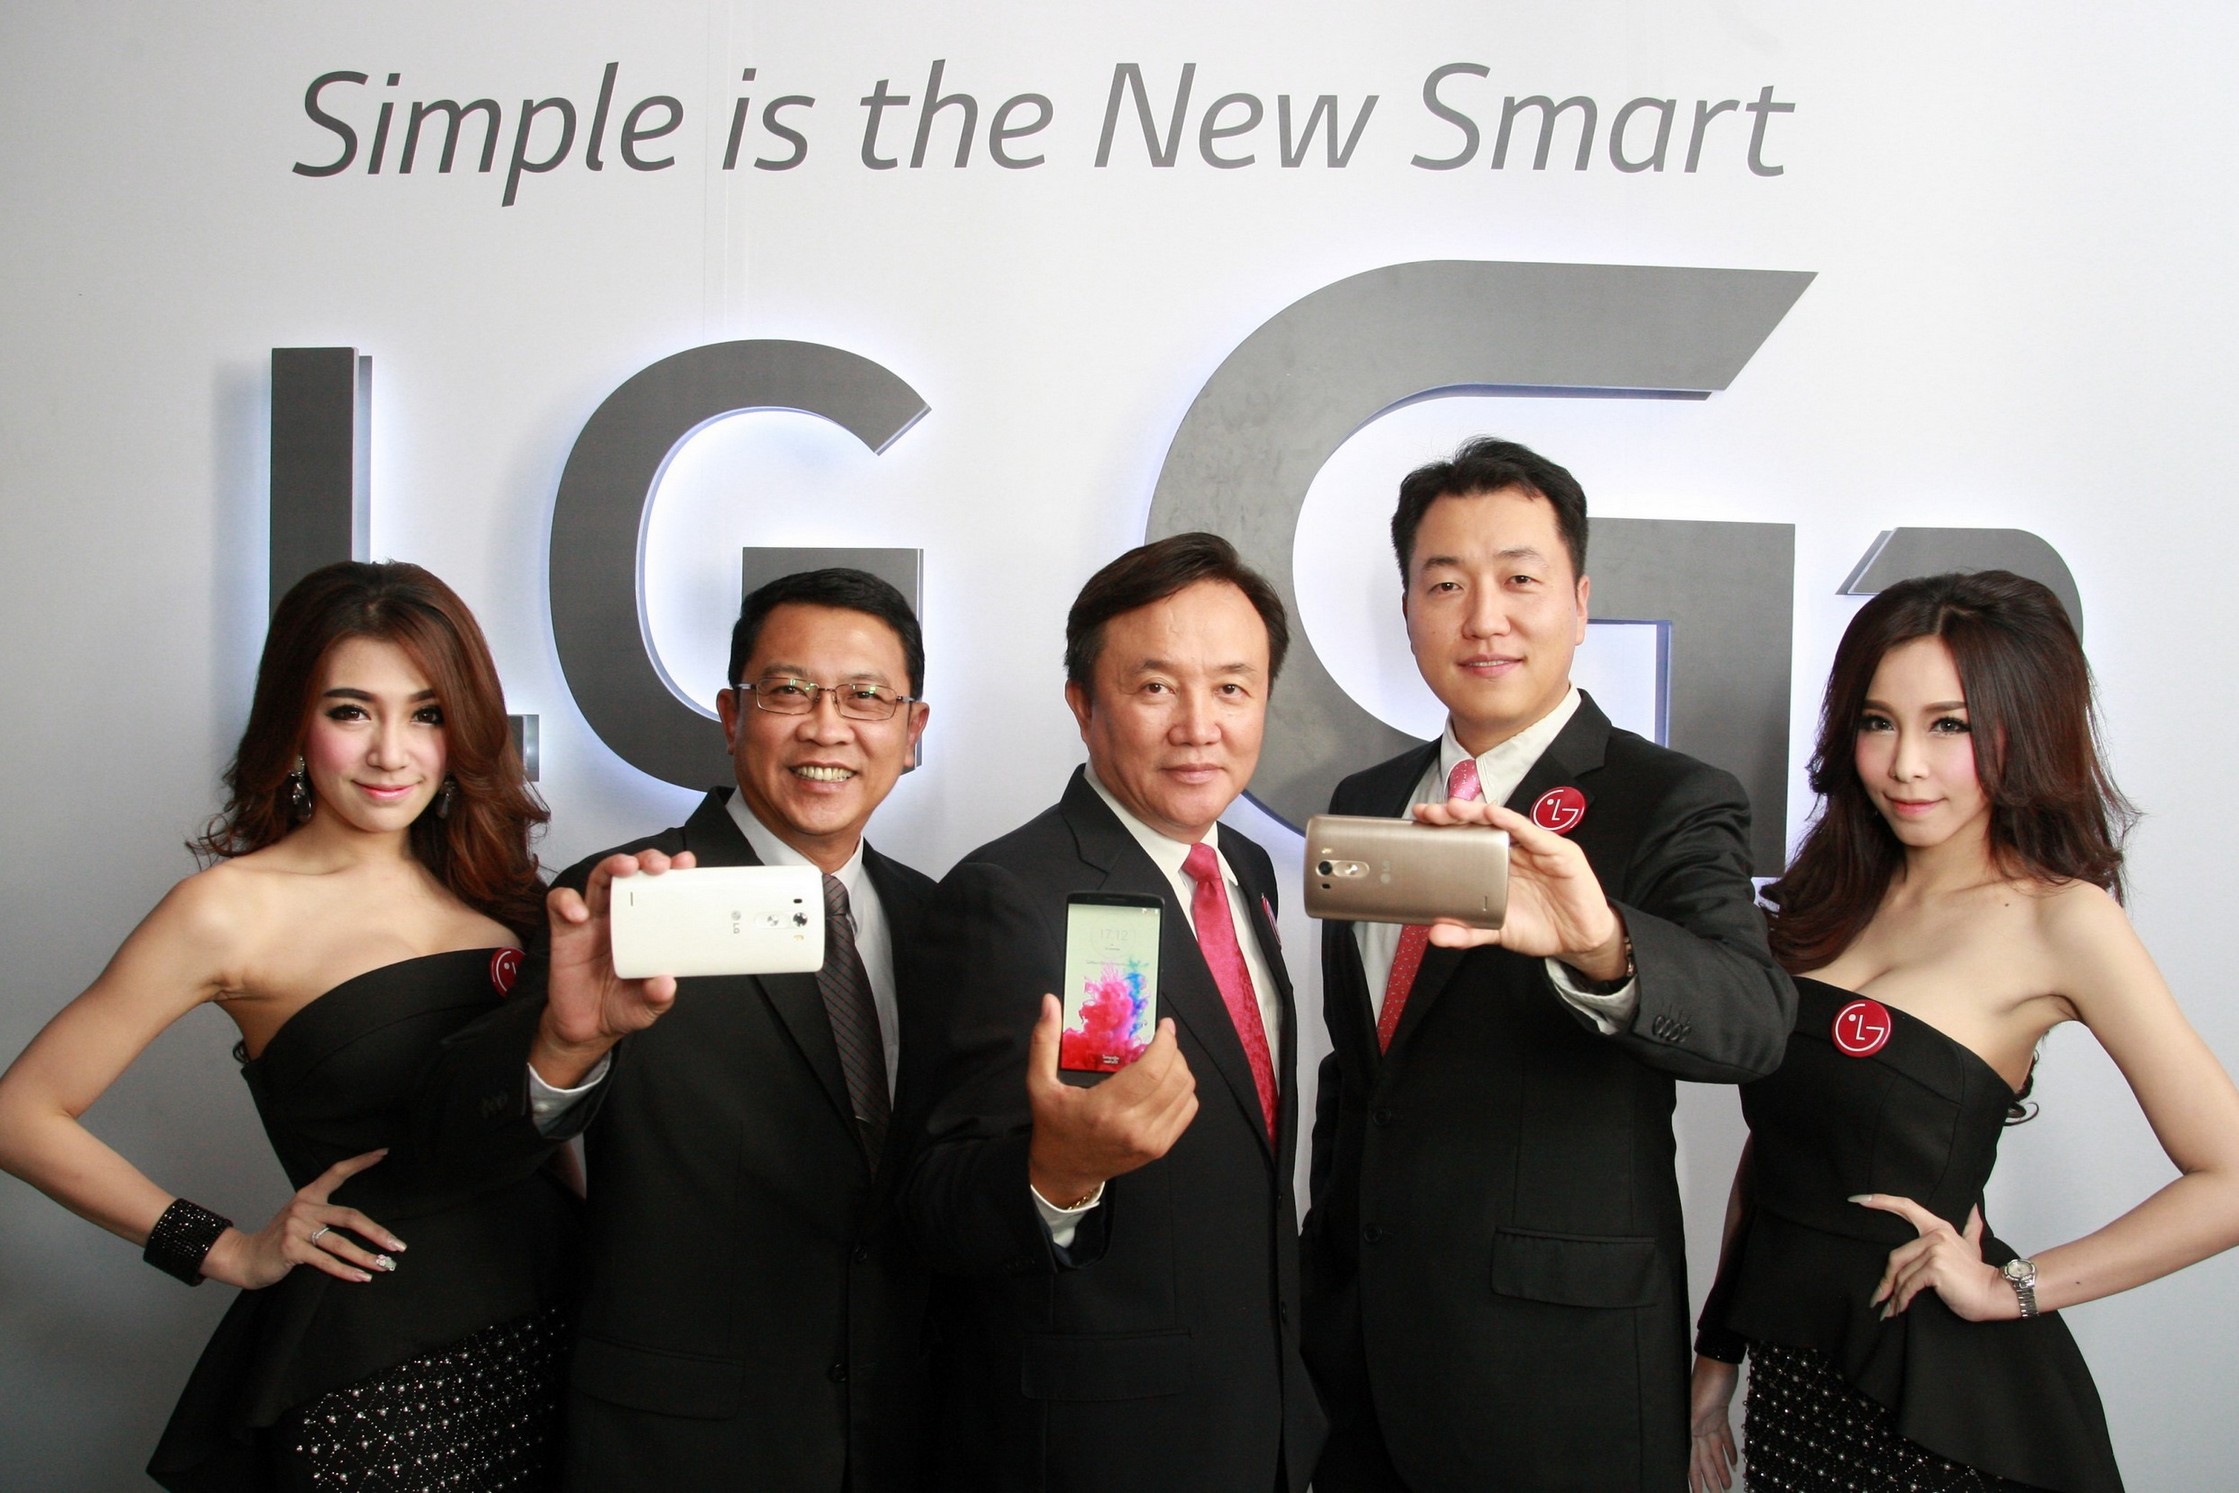 LG เปิดตัว LG G3 ในประเทศไทย นิยามใหม่ของความเรียบง่ายและชาญฉลาด